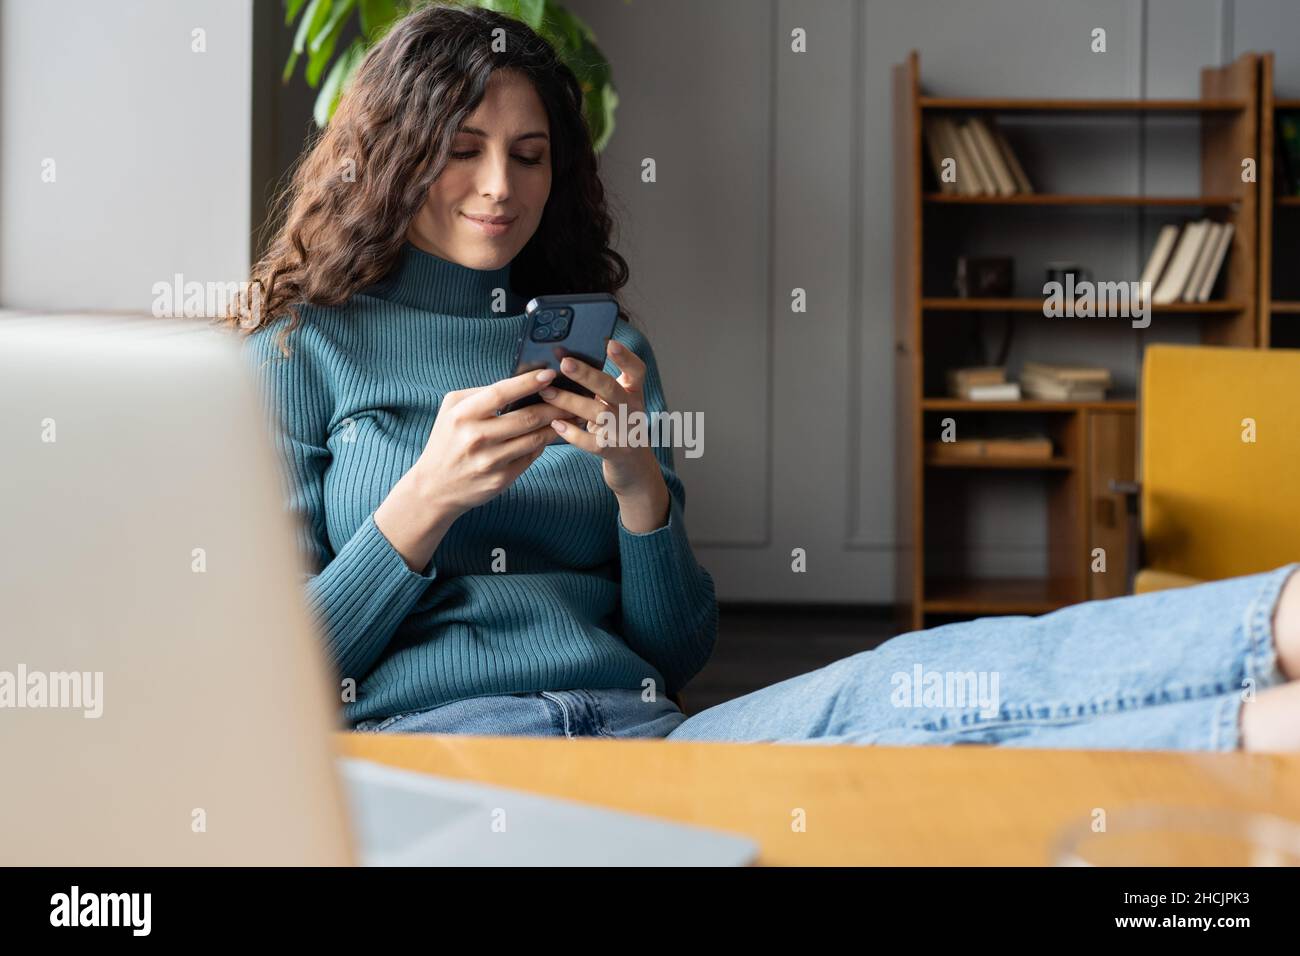 Giovane donna sorridente che tiene lo smartphone chiacchierando online mentre si rilassa in un accogliente ufficio domestico Foto Stock